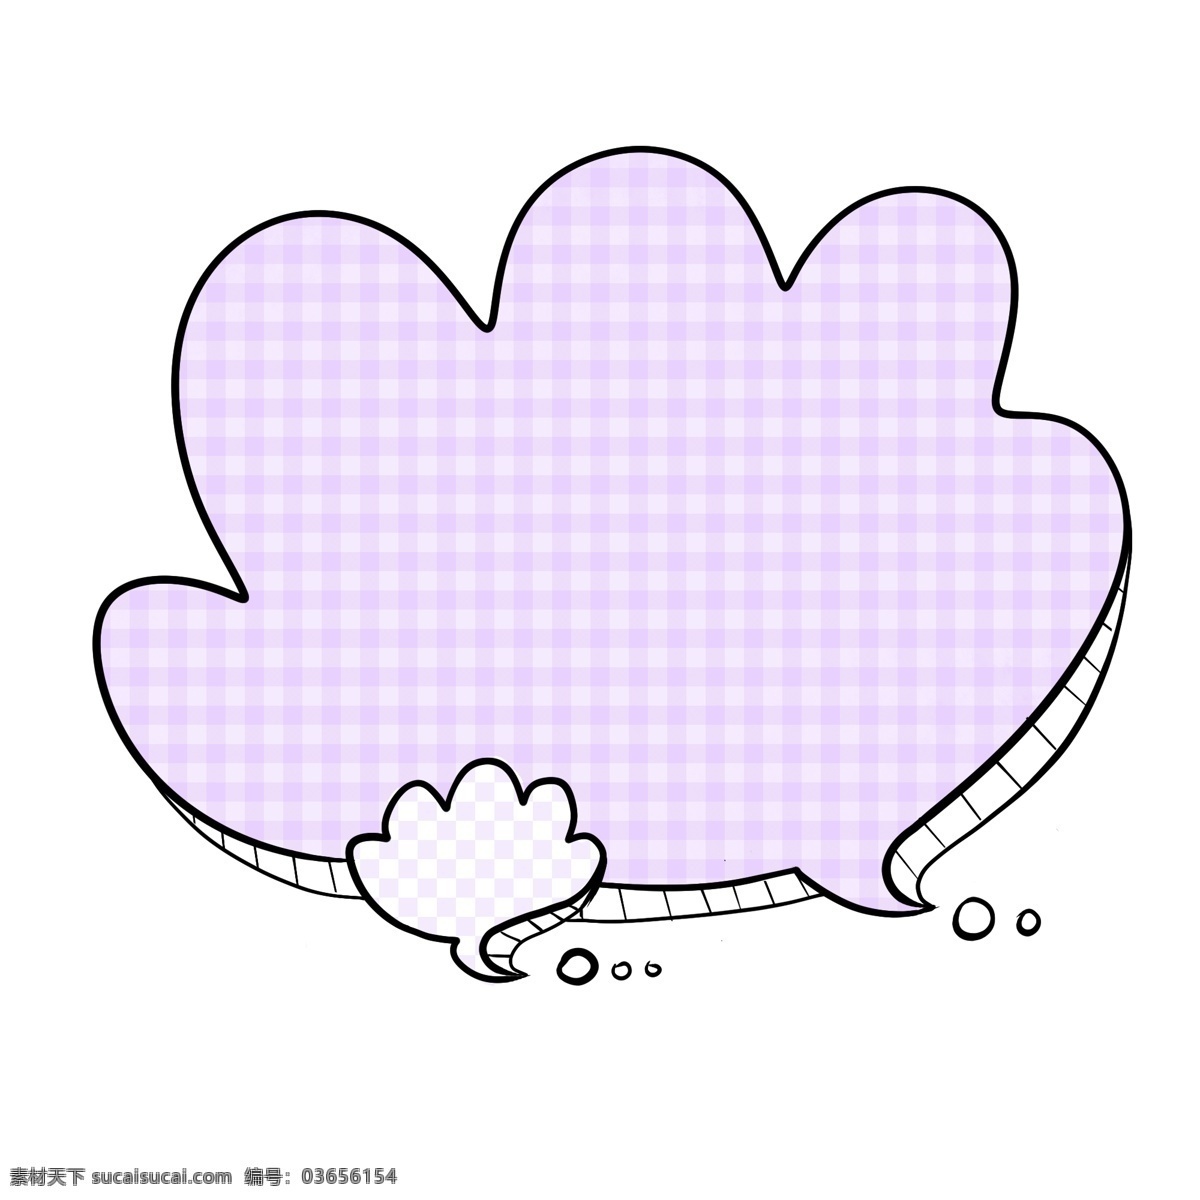 贝壳 形状 对话框 贝壳形状 大贝壳 小贝壳 紫色 格子图案 淡紫色 立体 阴影 手绘 卡通 实用 边框 简洁